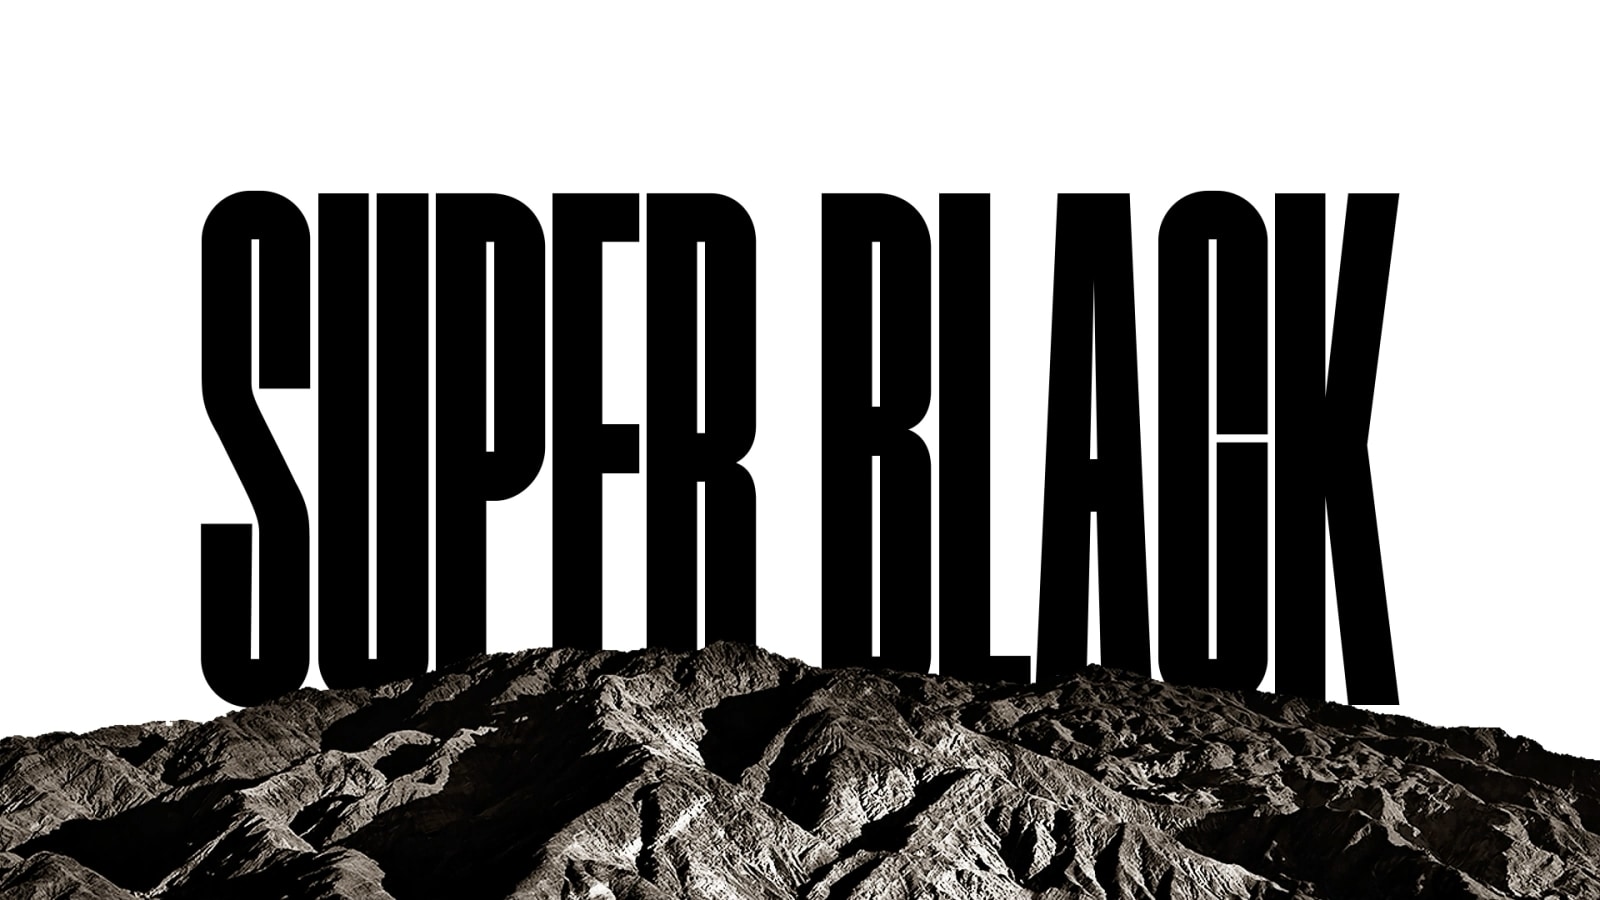 Besede "PERFECT BLACK" so prikazane s krepkimi črnimi črkami. Črna silhueta ostro definirane gore se nato dvigne, da prekrije črke, razkrije pa tudi podeželje in peščene sipine. Črna kopija izgine za črnim nebom.